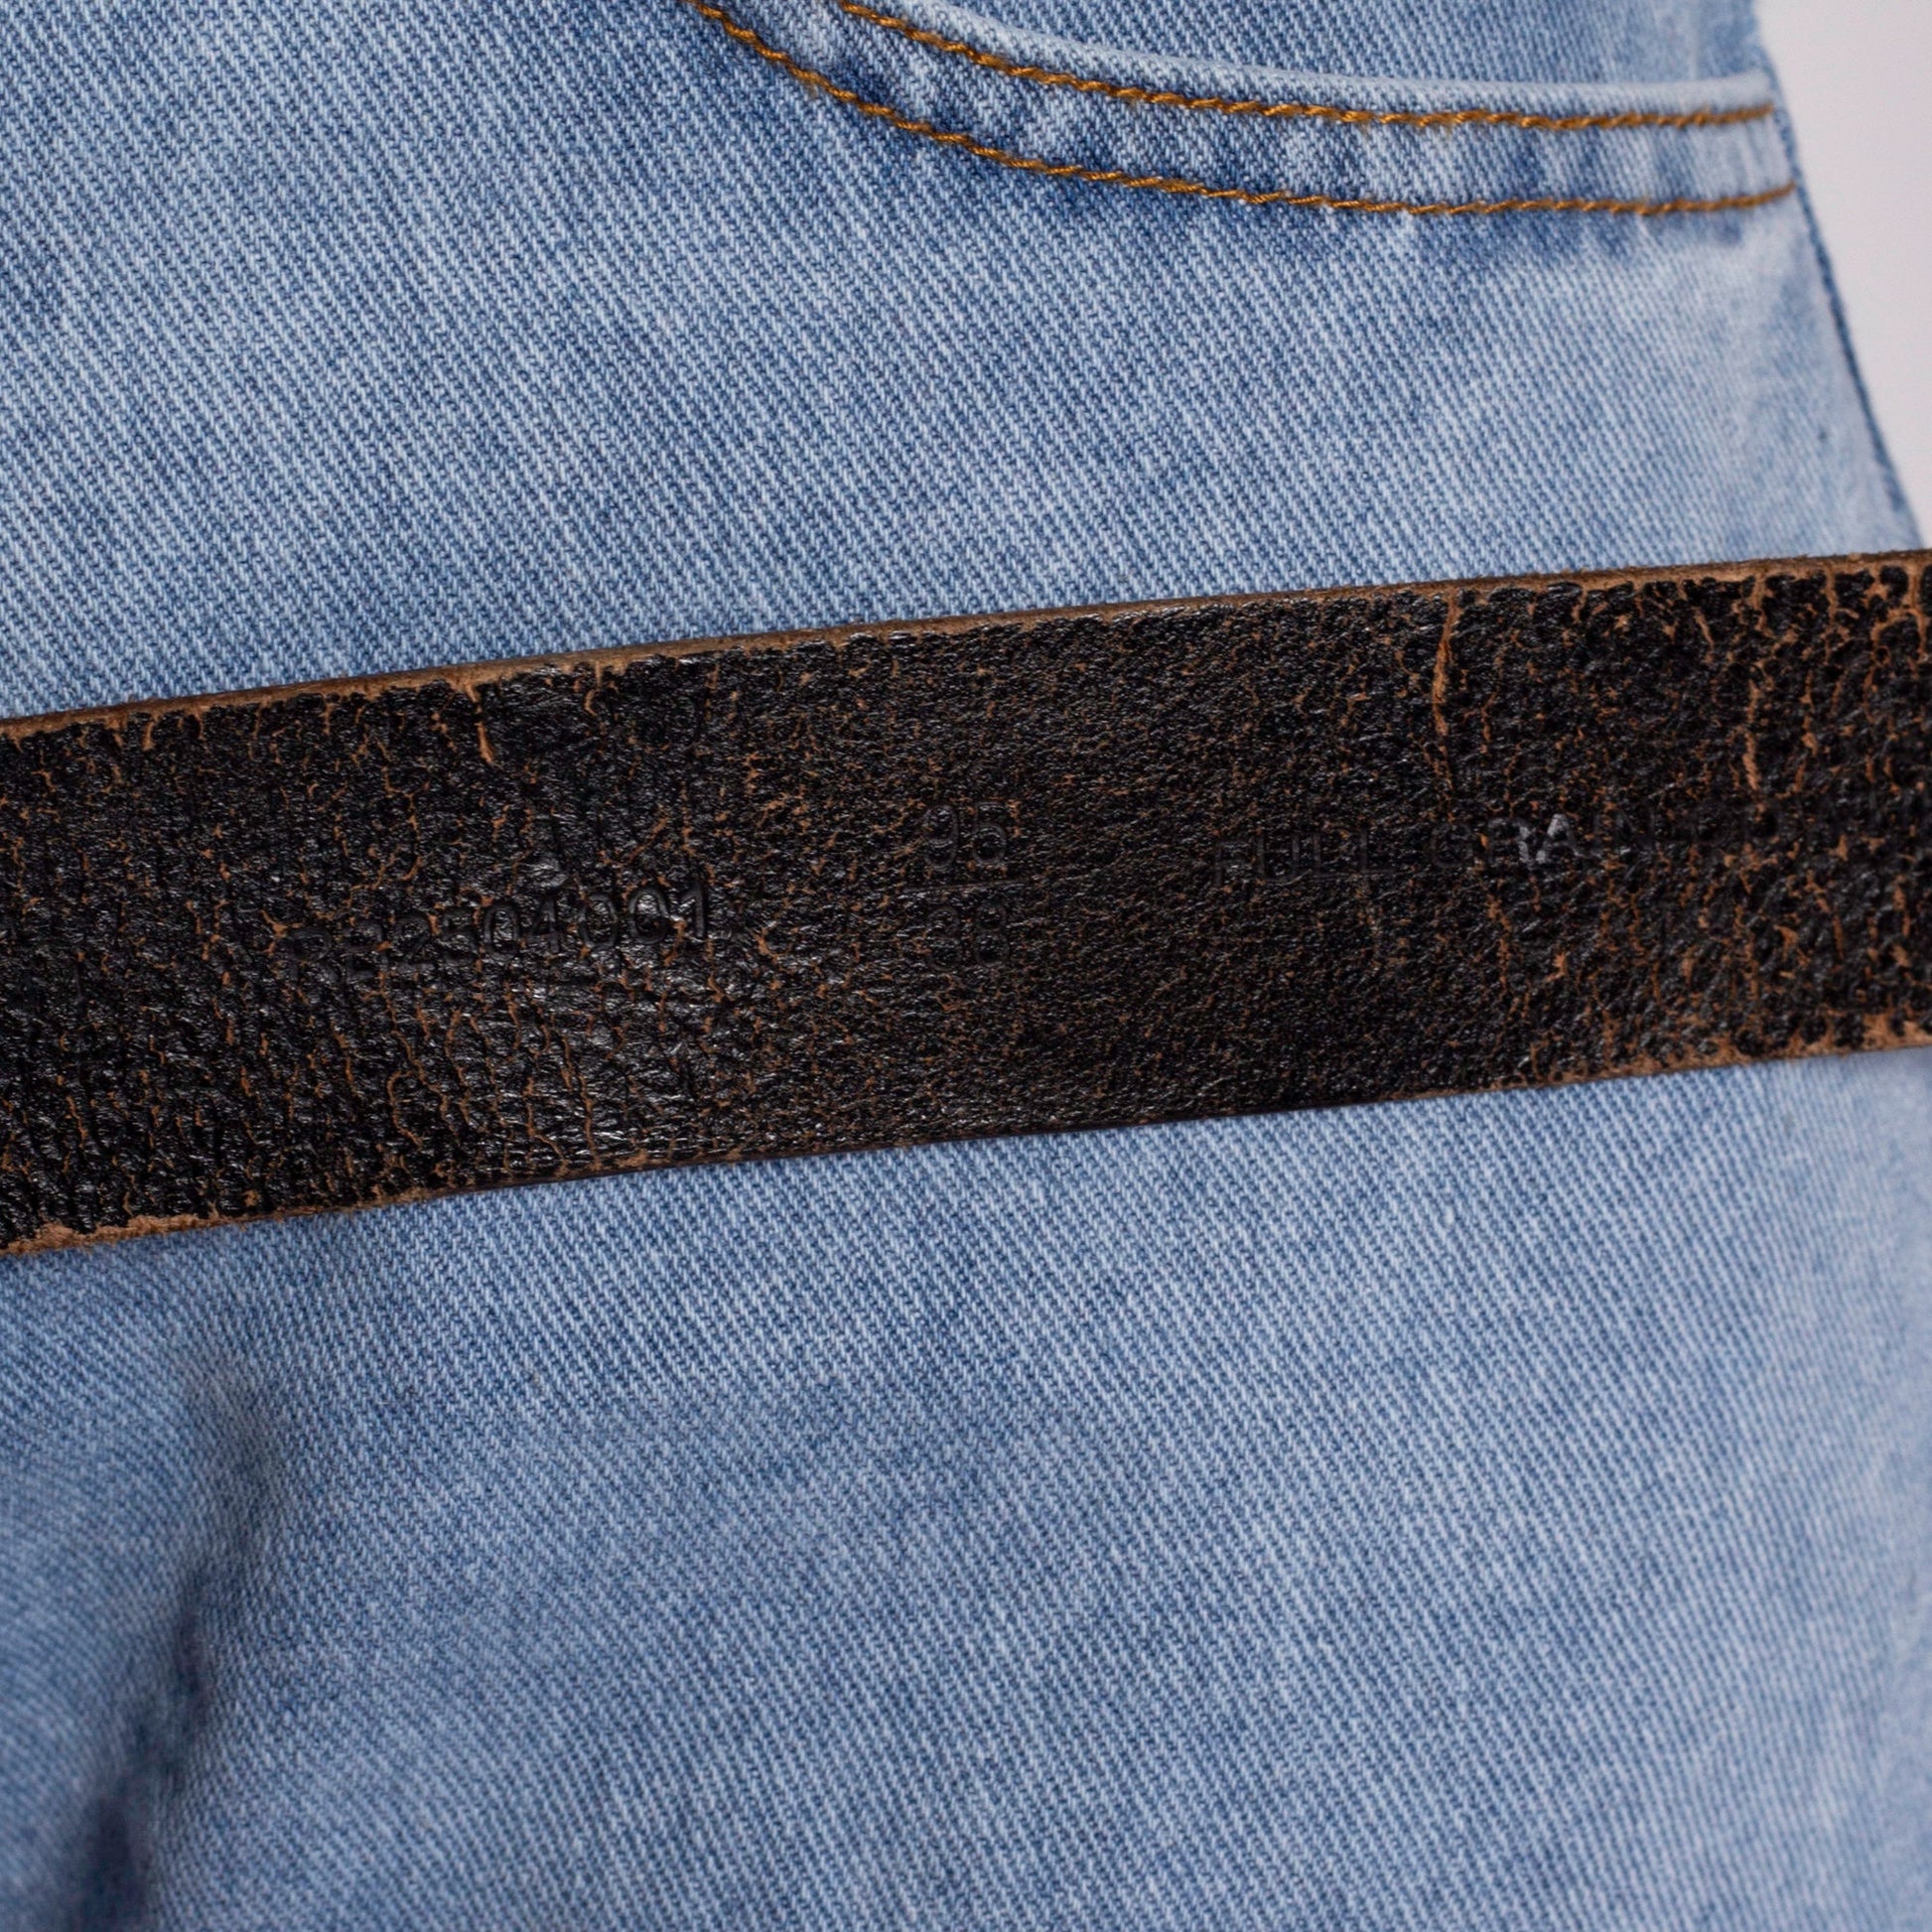 Vintage 70s Crackled Dark Brown Leather Belt - Size 38